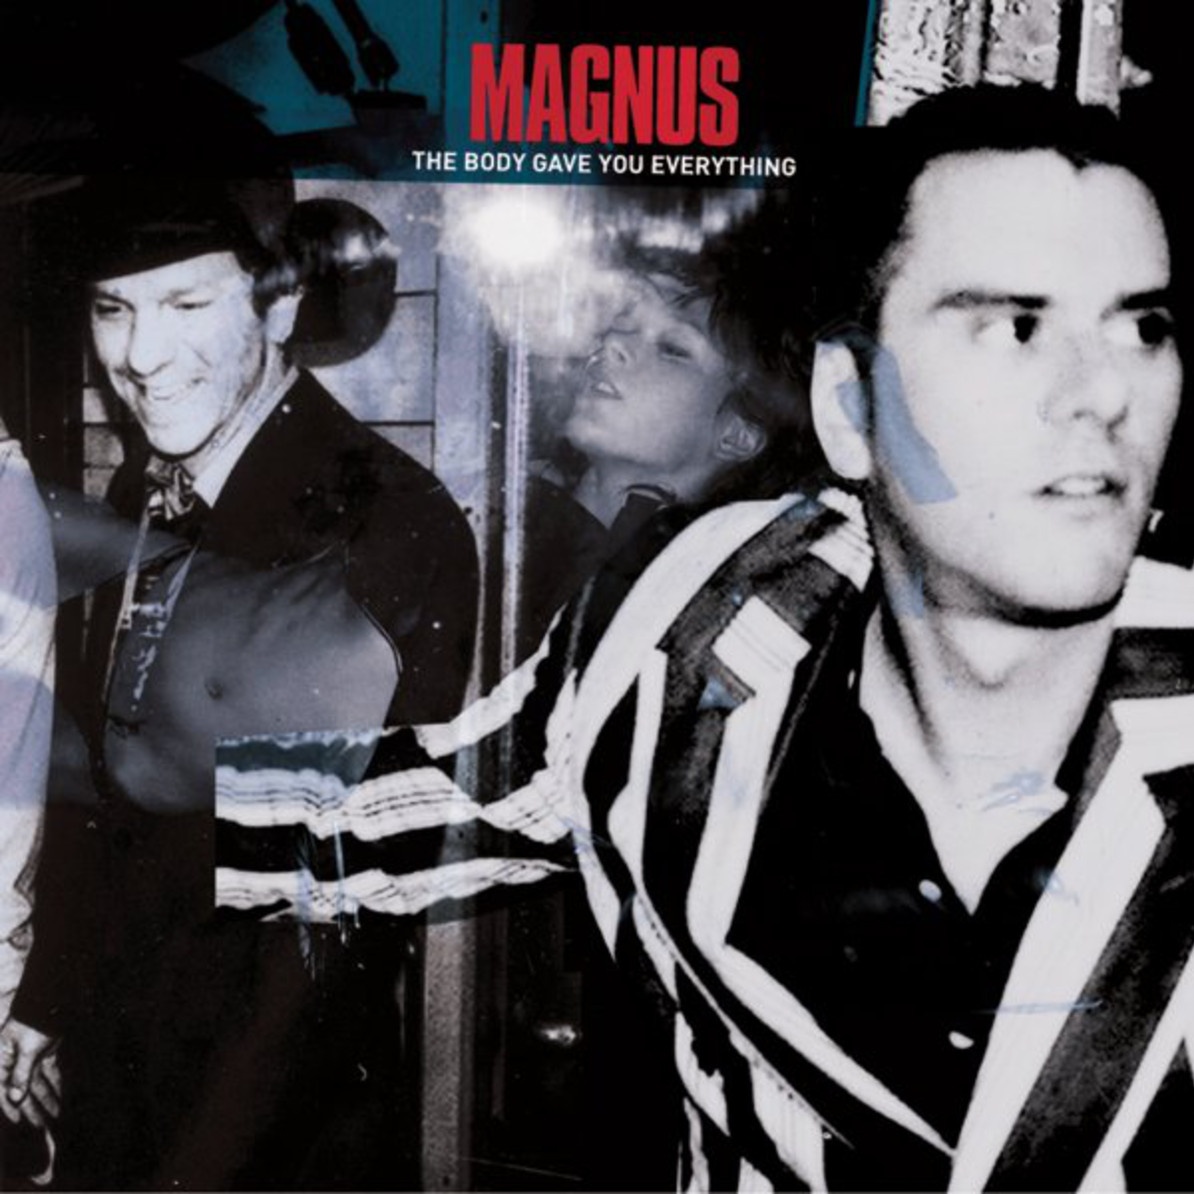 Assault on Magnus (Album version)